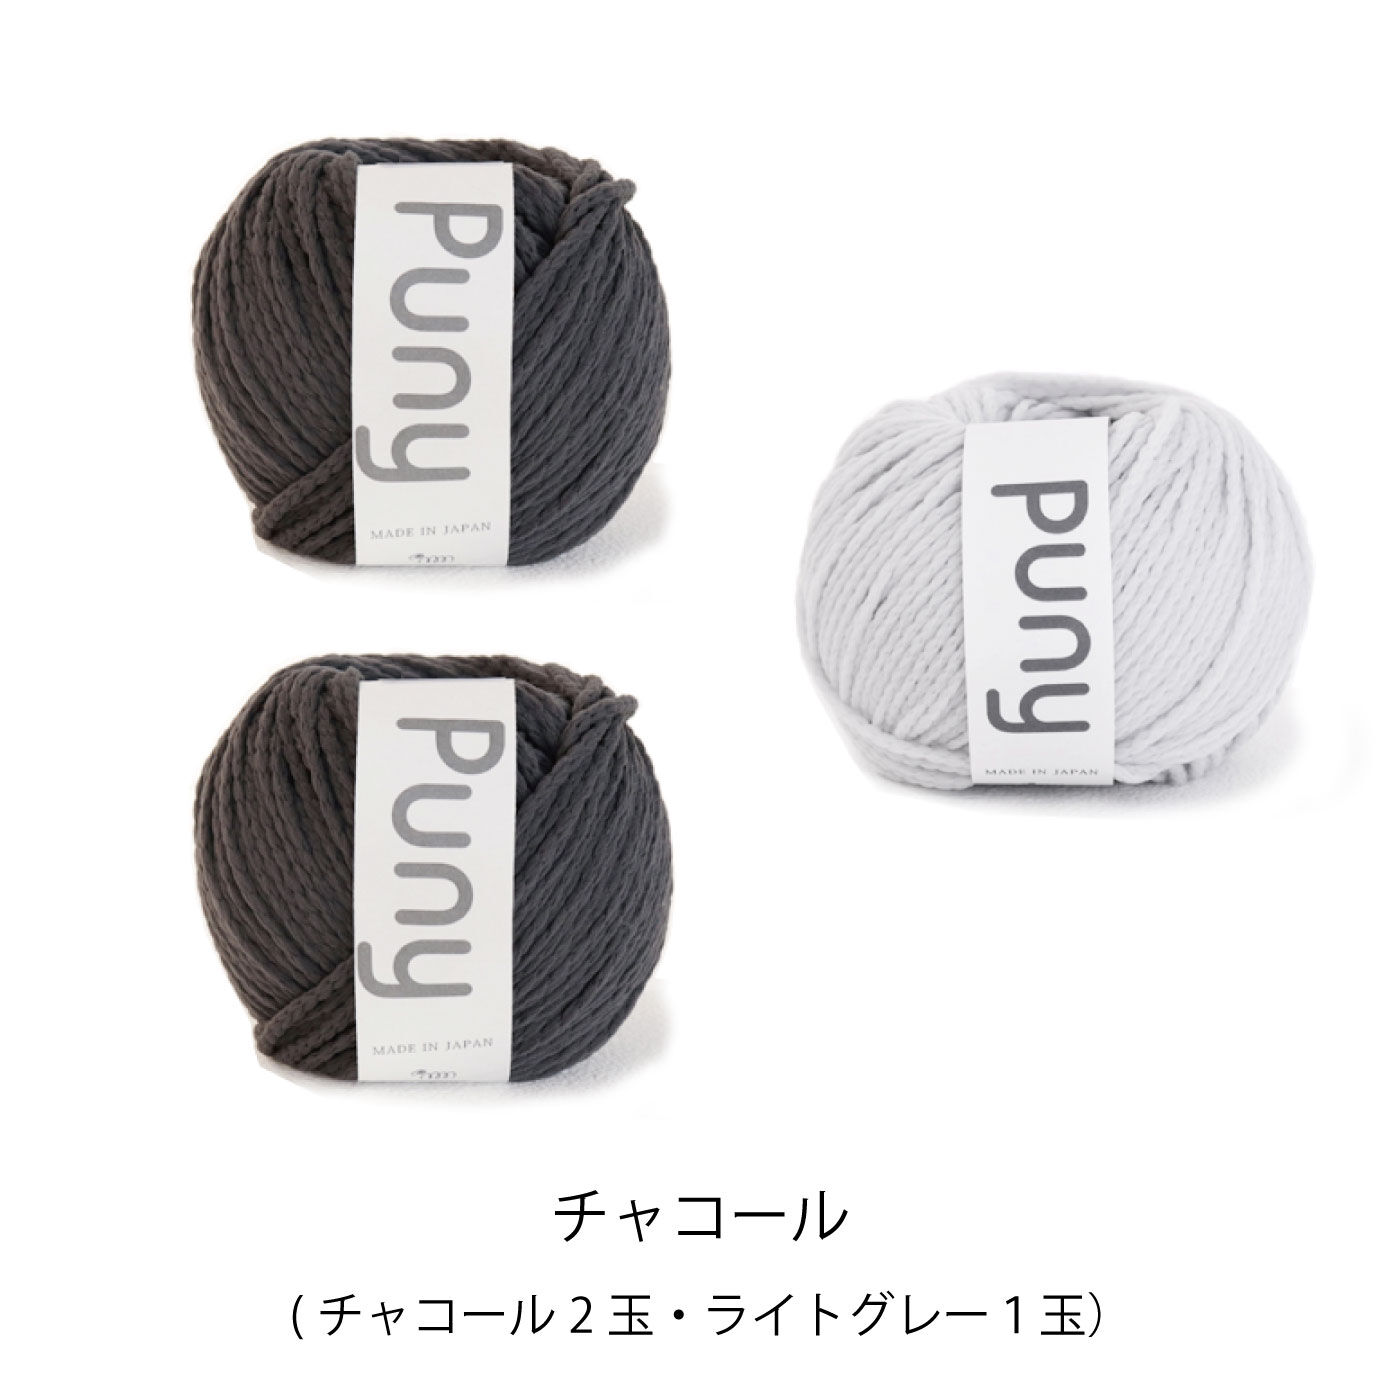 FELISSIMO PARTNERS|ふわ軽毛糸Pｕｎｙで編む　sawada itto：amuri　ちびまるバスケットキット